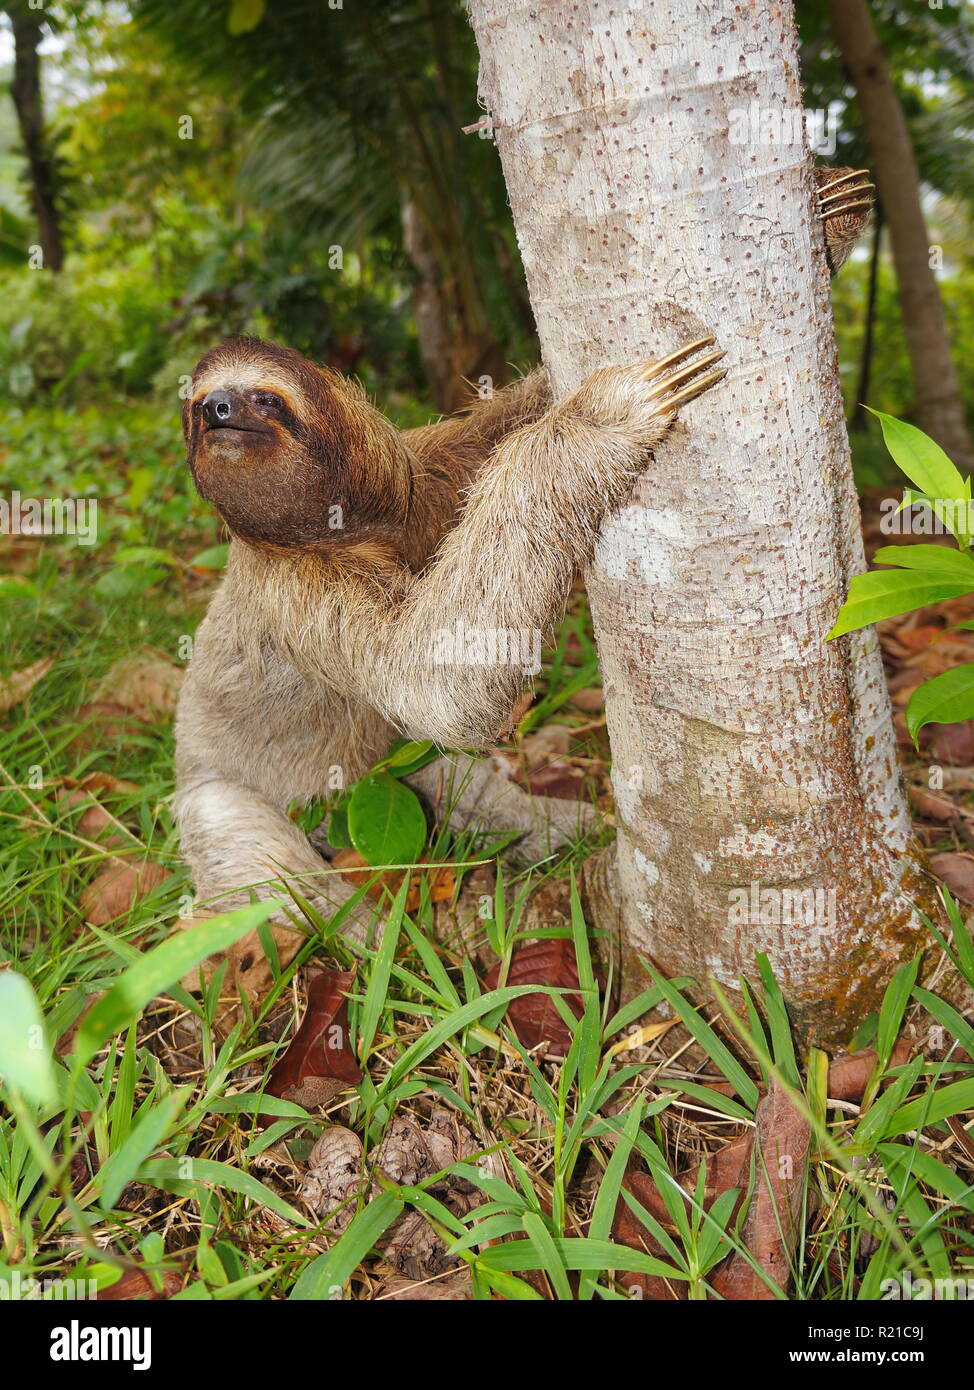 A tre dita bradipo sul terreno inizia a salire un albero, Panama America Centrale Foto Stock